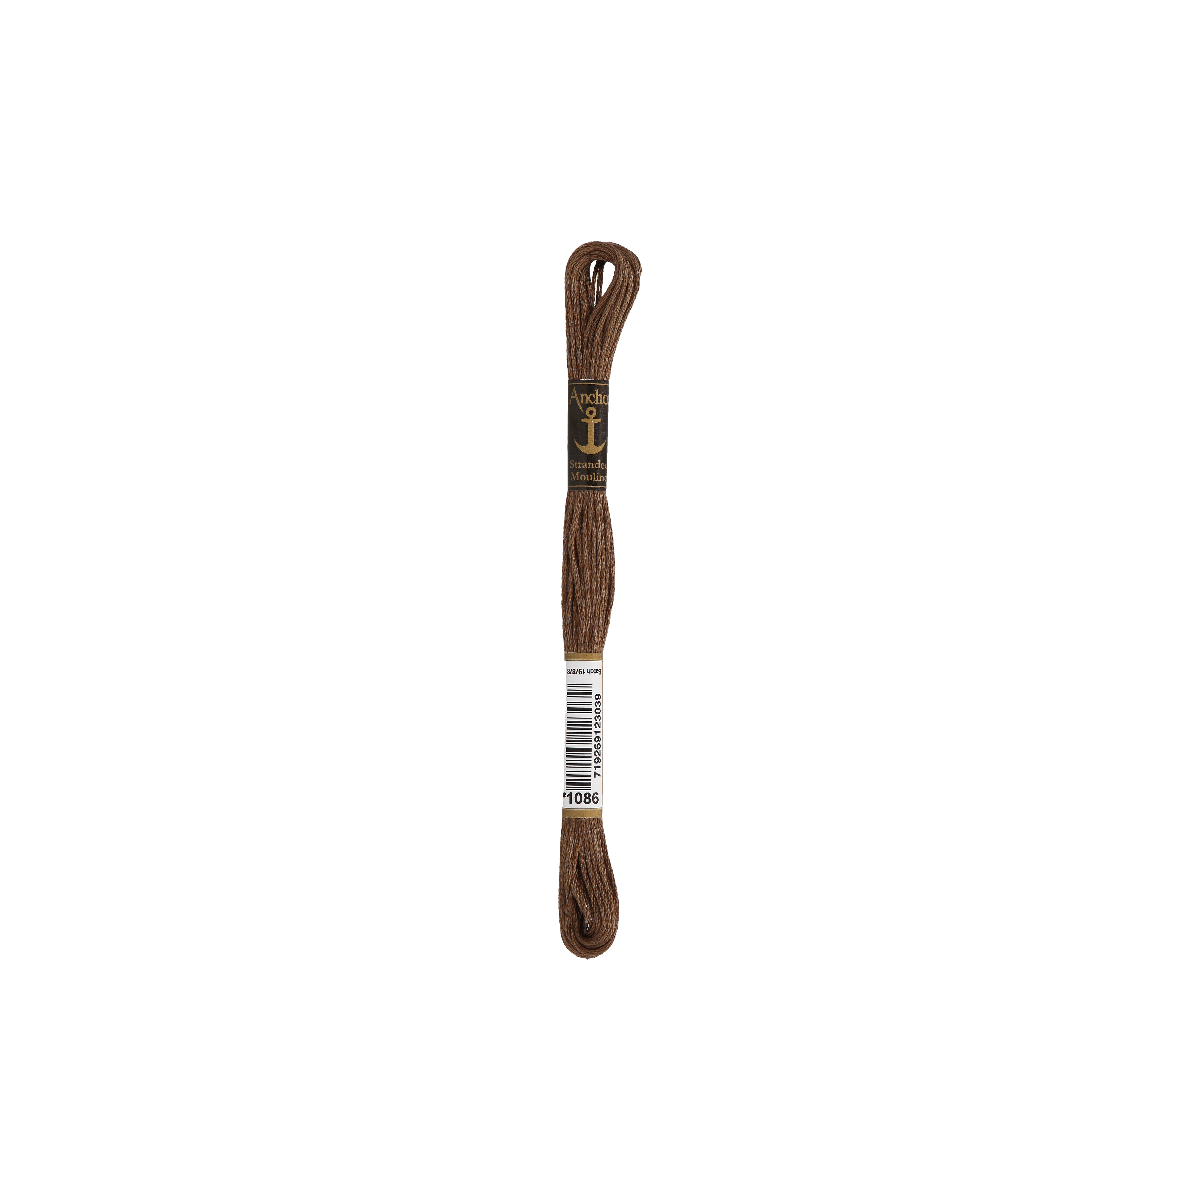 Anchor Sticktwist 8m, marrone medio, cotone, colore 1086,...